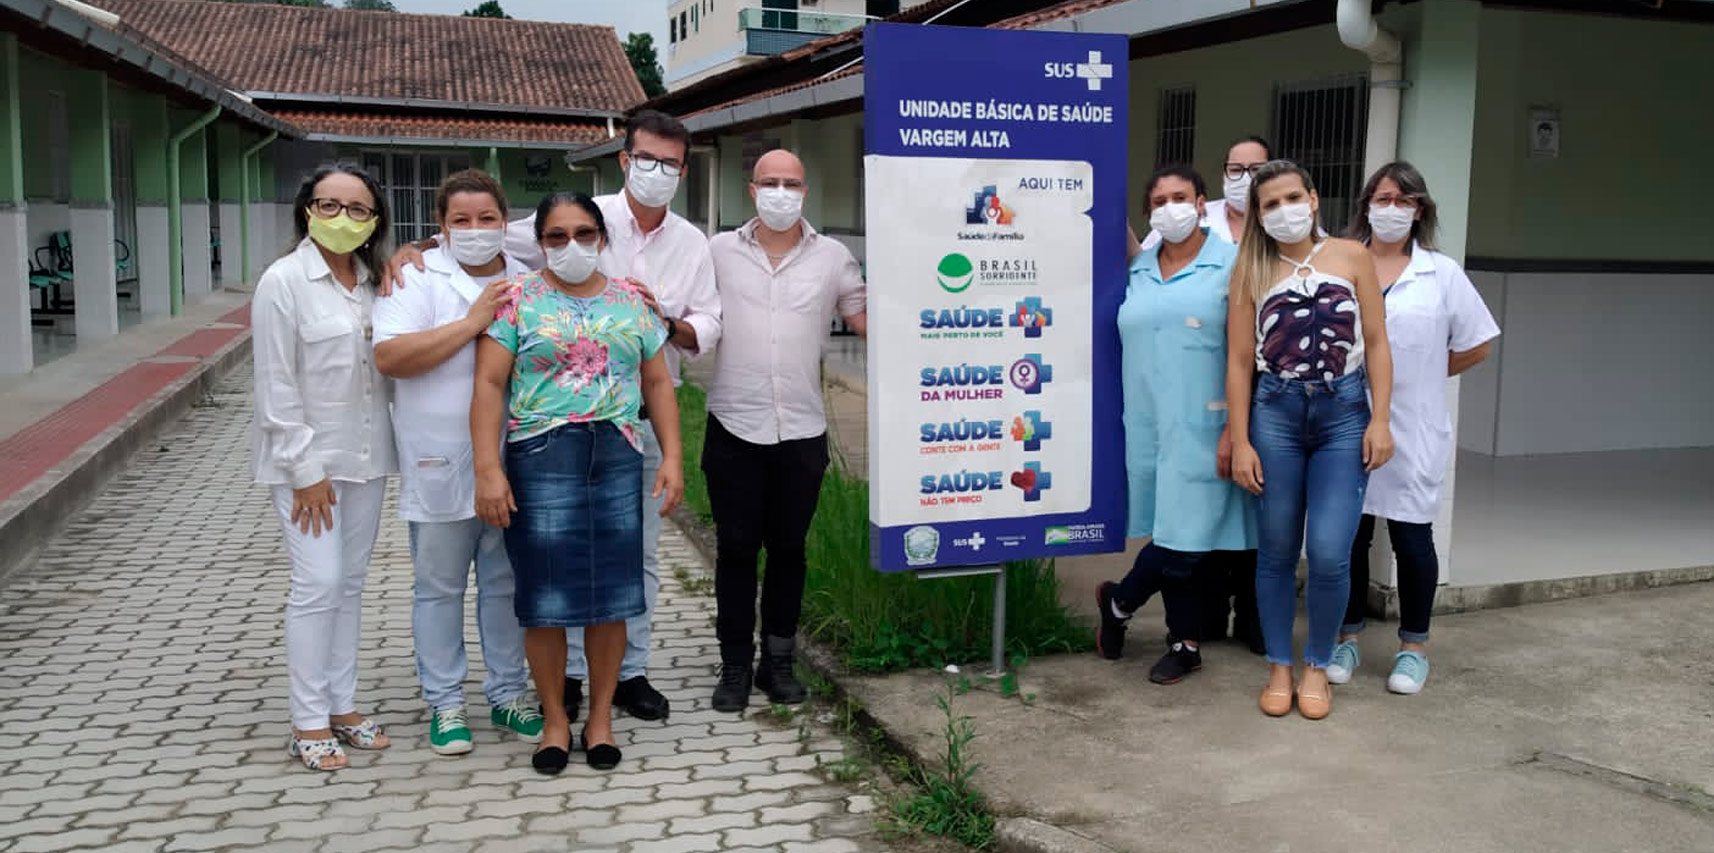 Superintendente regional de Saúde visita Vargem Alta durante ação de vacinação contra covid-19